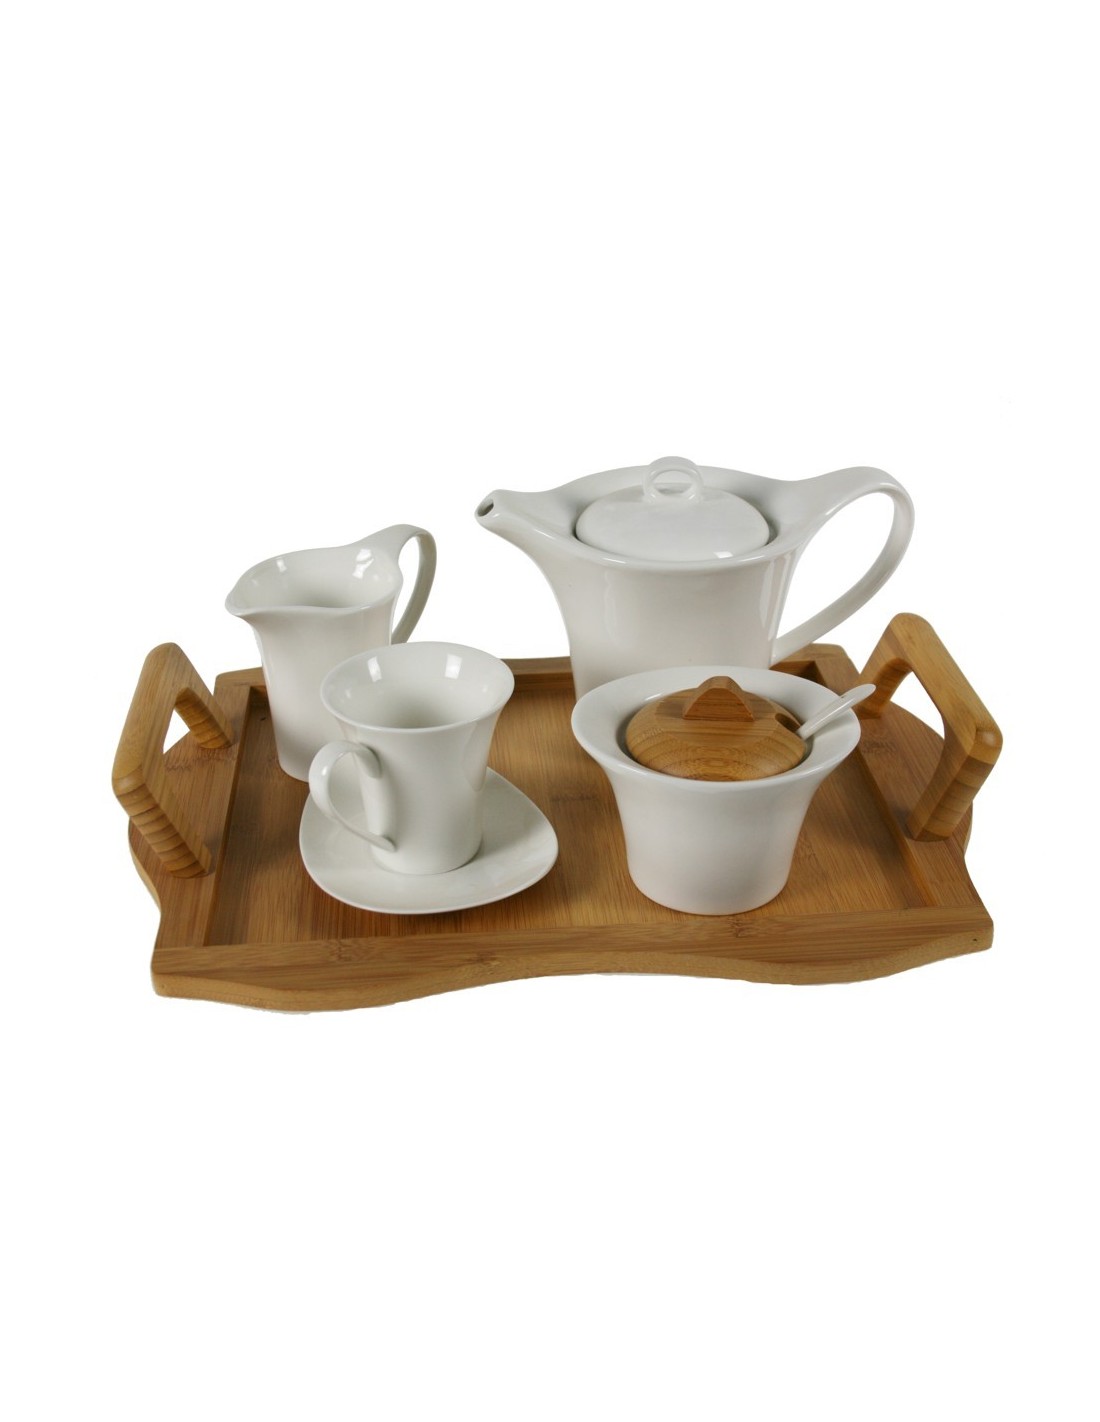 Juego de café de 12 piezas de cerámica blanca con bandeja de madera de bambú servicio de mesa 